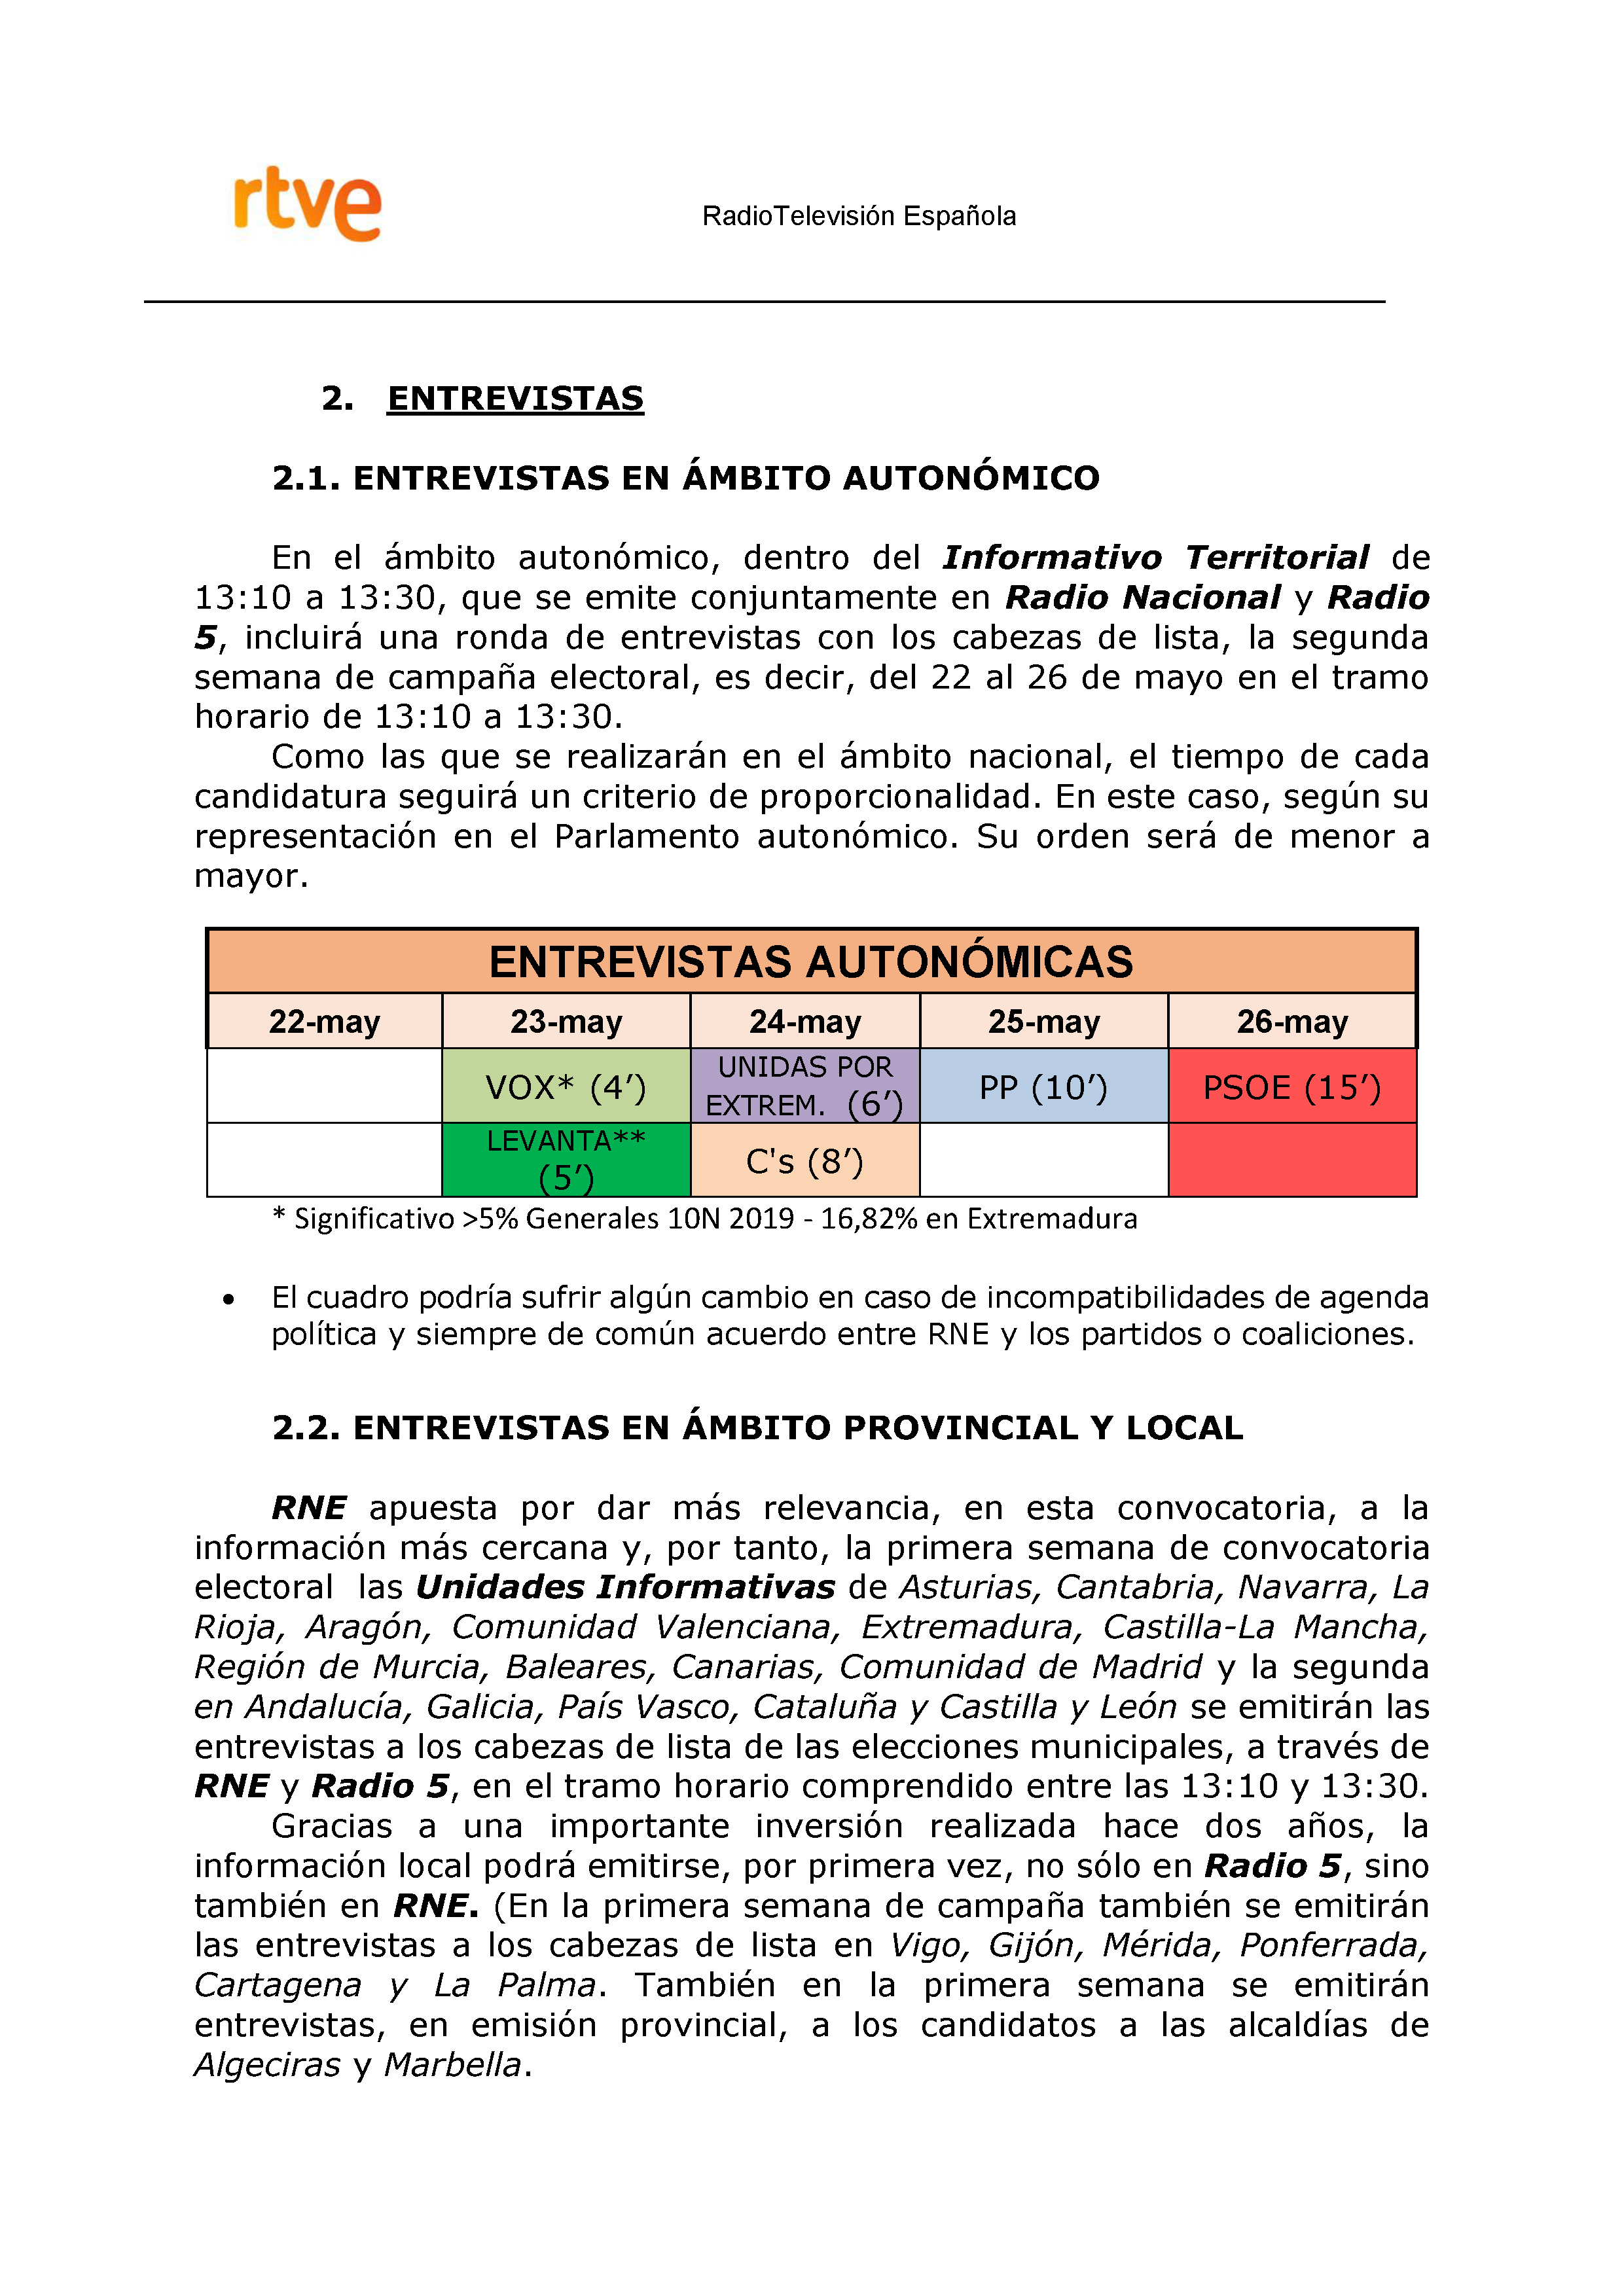 PLAN DE COBERTURA INFORMATIVA RTVE en Extremadura ELECCIONES MUNICIPALES Y AUTONÃ“MICAS Pag 11